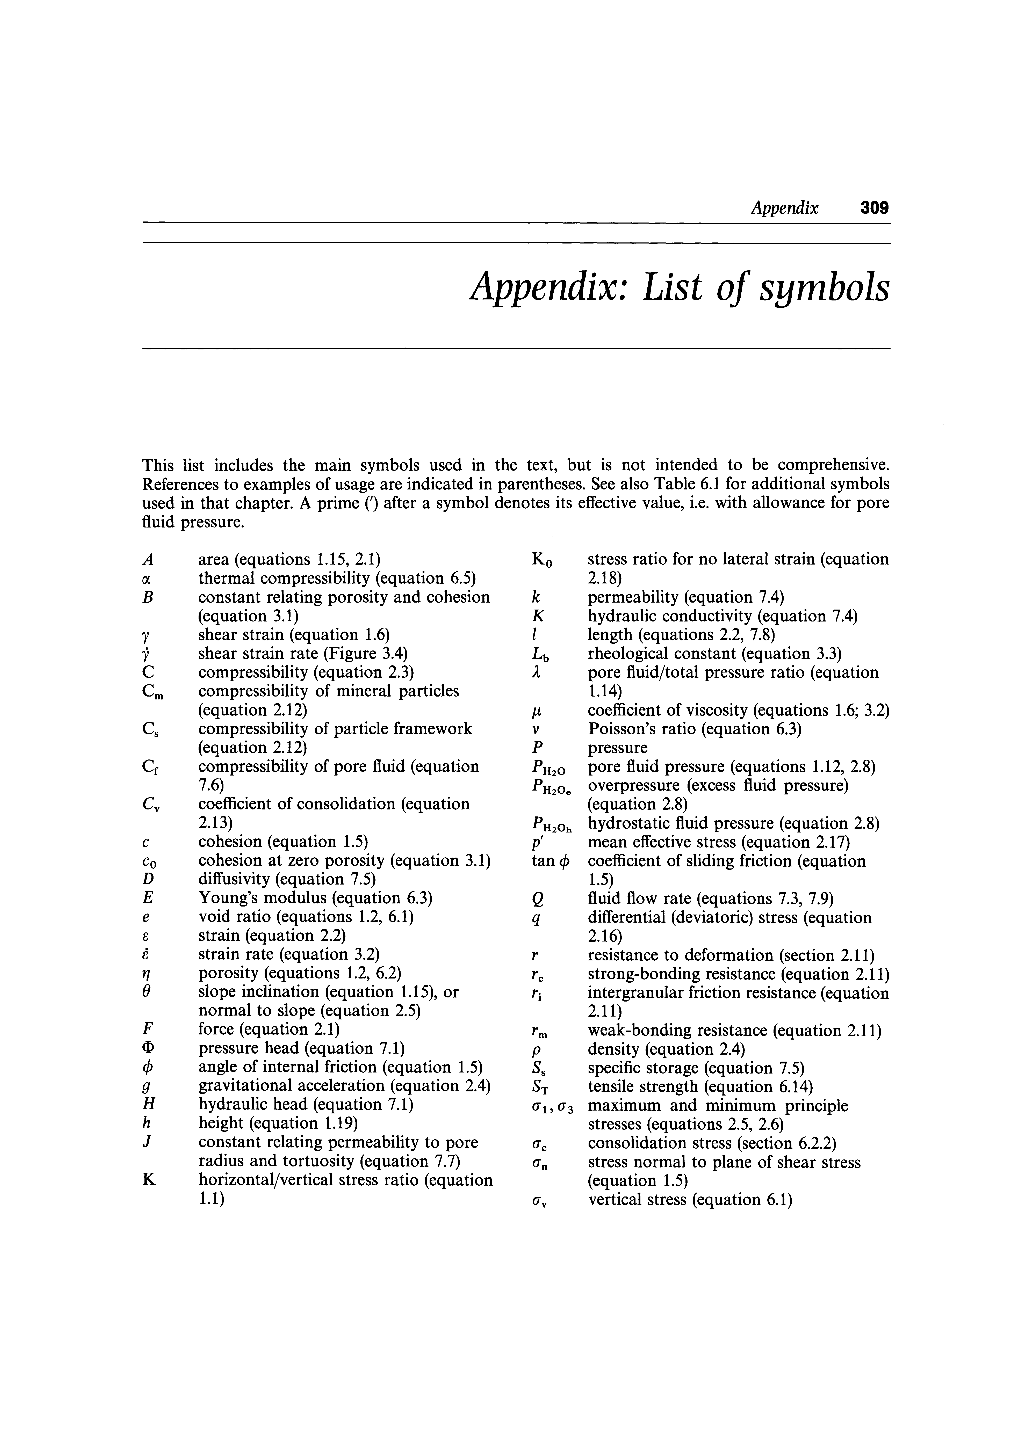 Appendix: List of Symbols